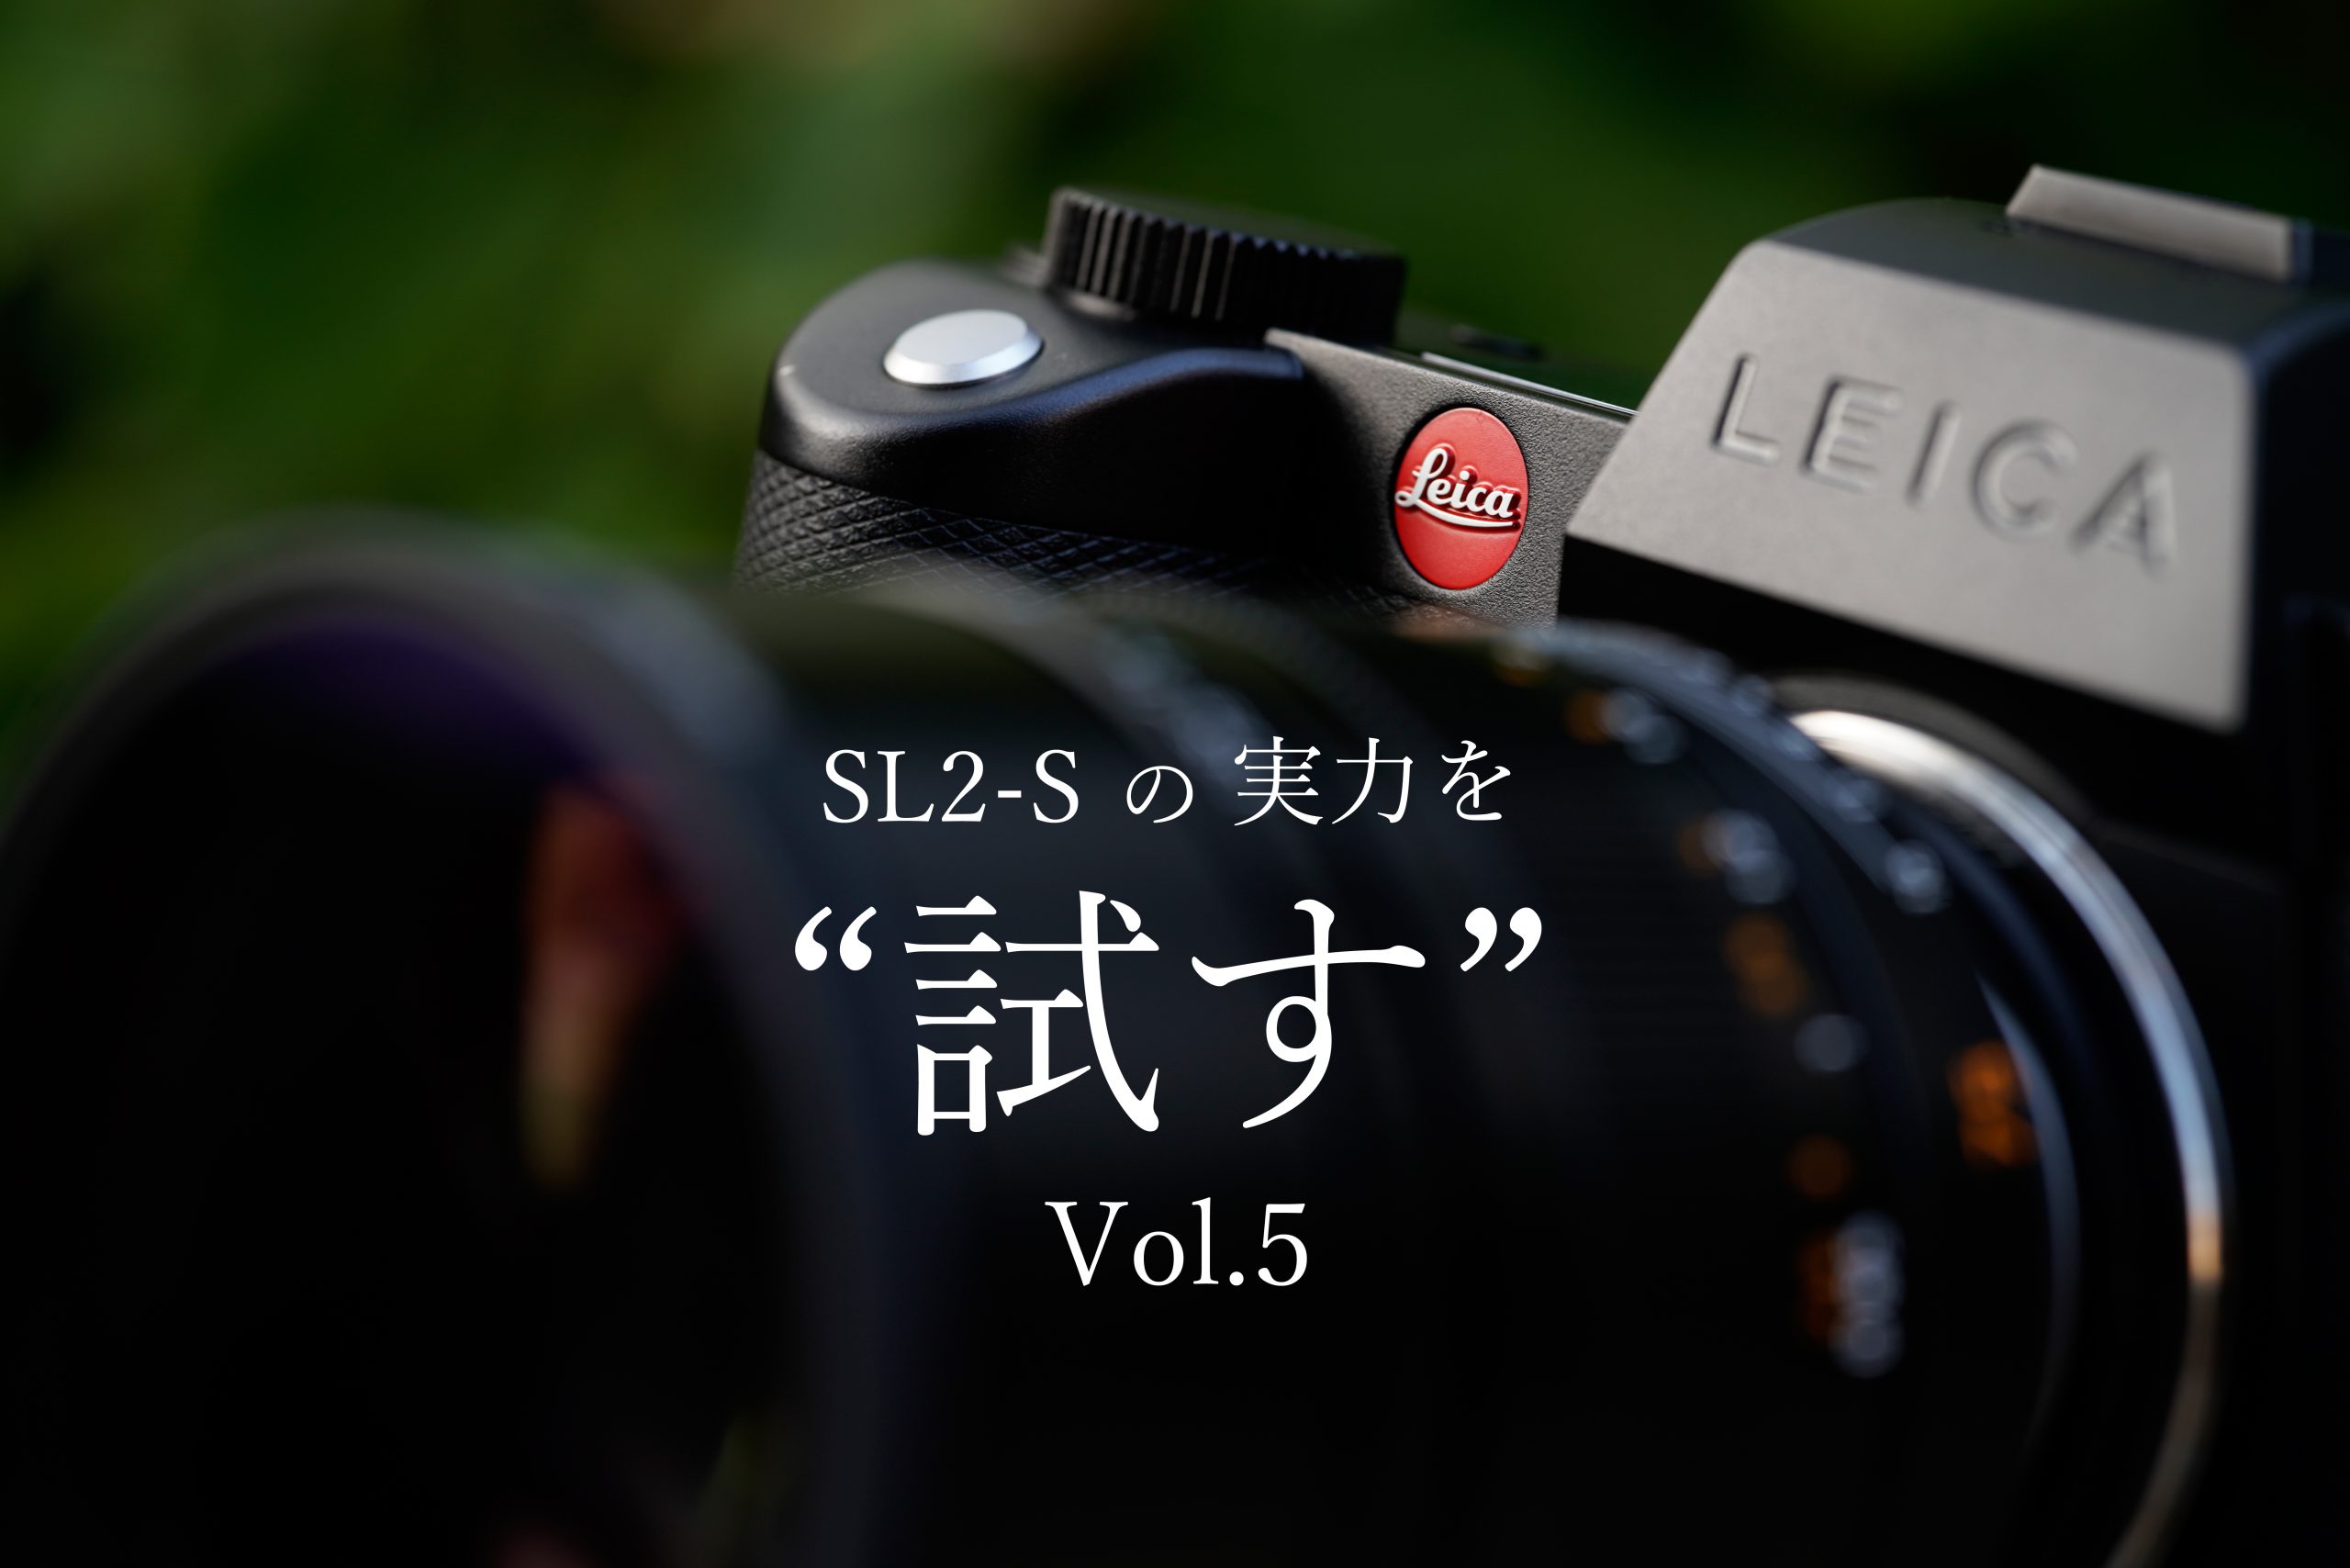 Leica】M series レンズの神髄を最大限まで引き出してみる | THE MAP TIMES